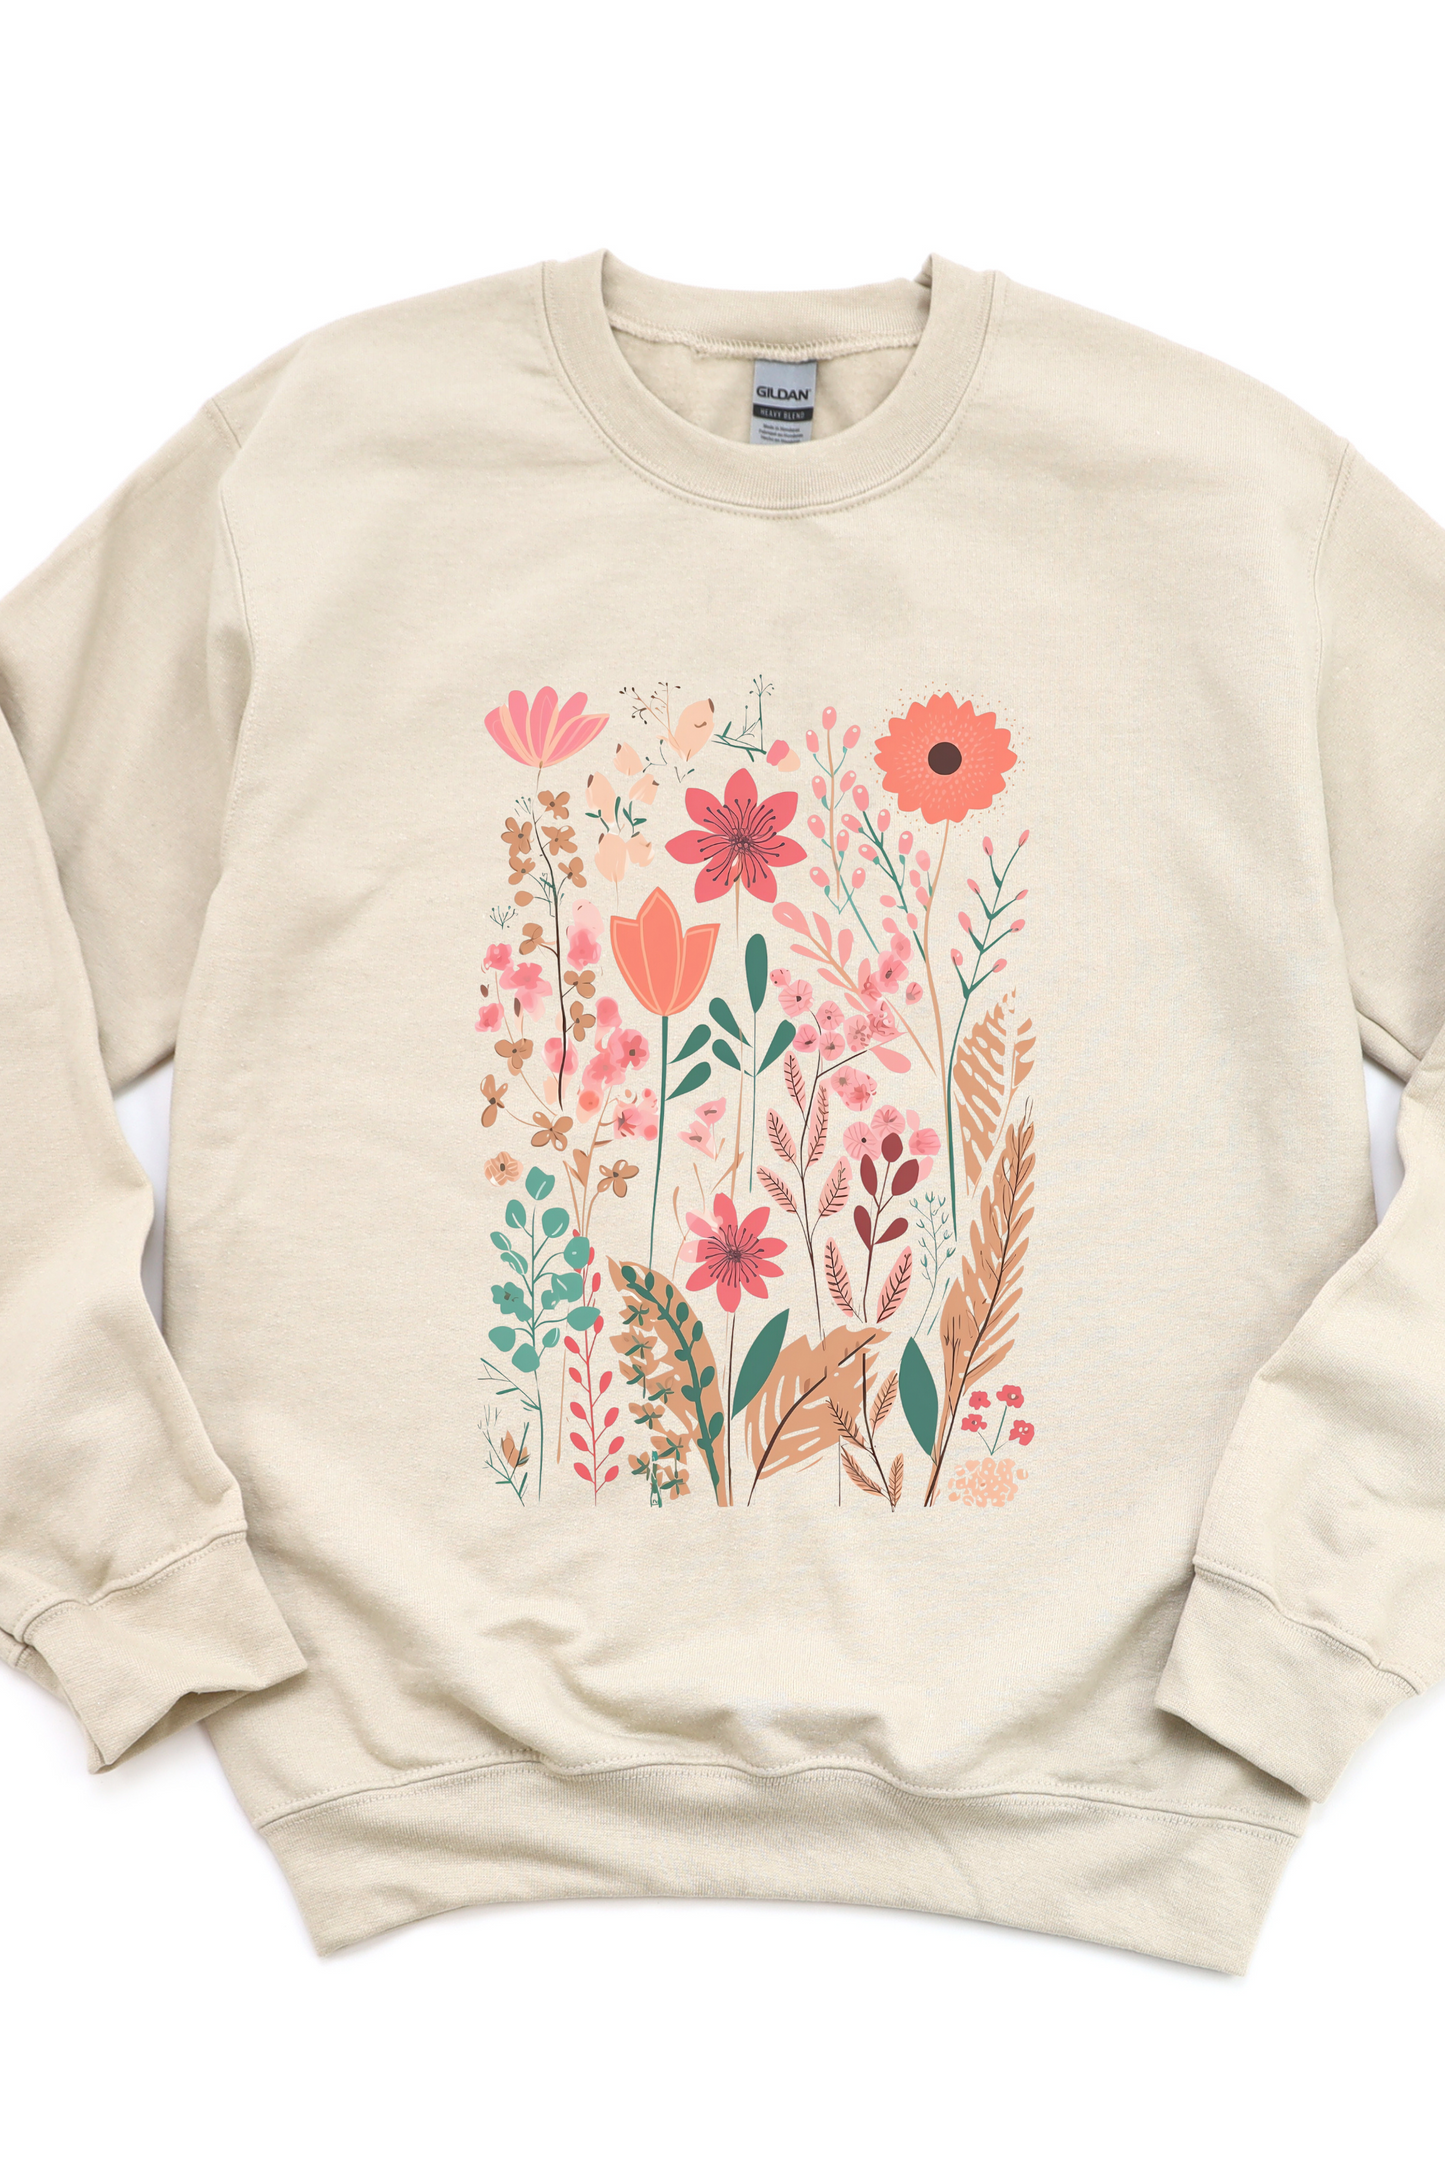 Wildflowers Graphic Sweatshirt